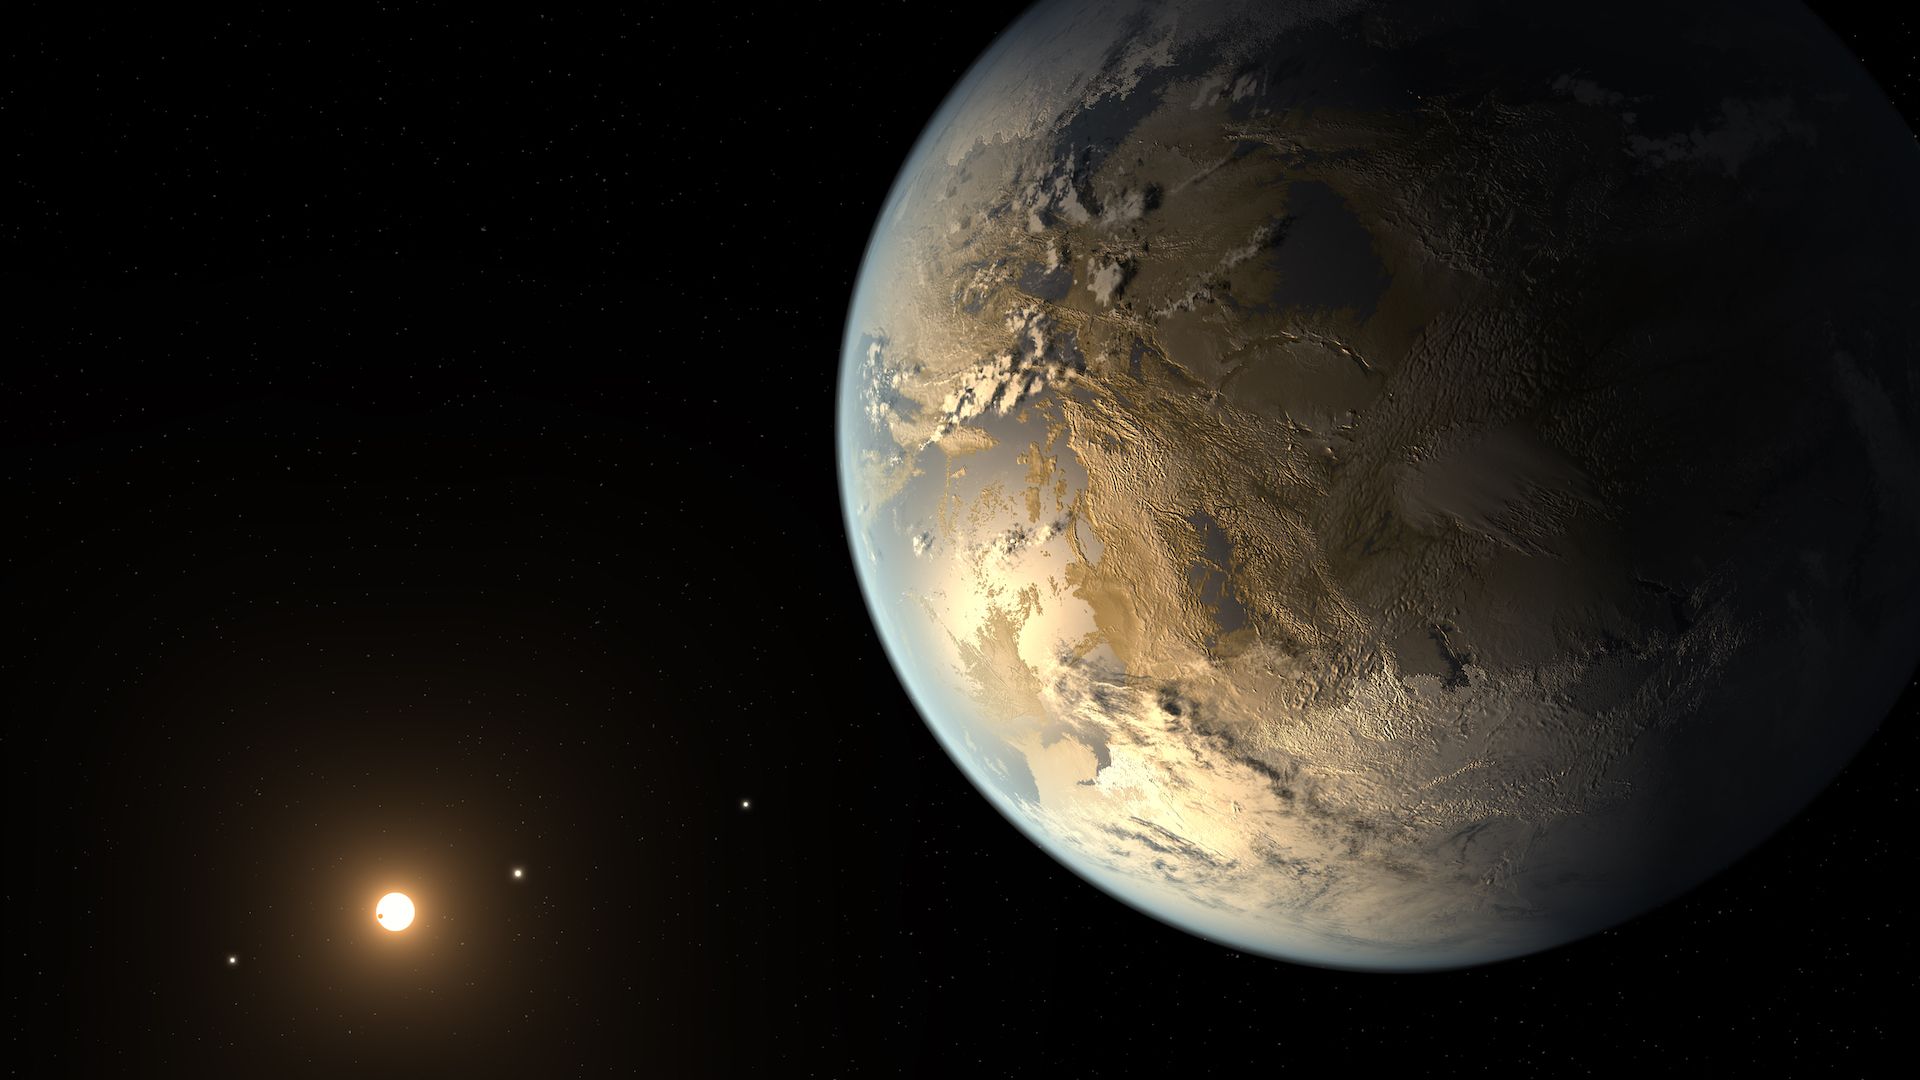 Artist's illustration of Kepler-186f 